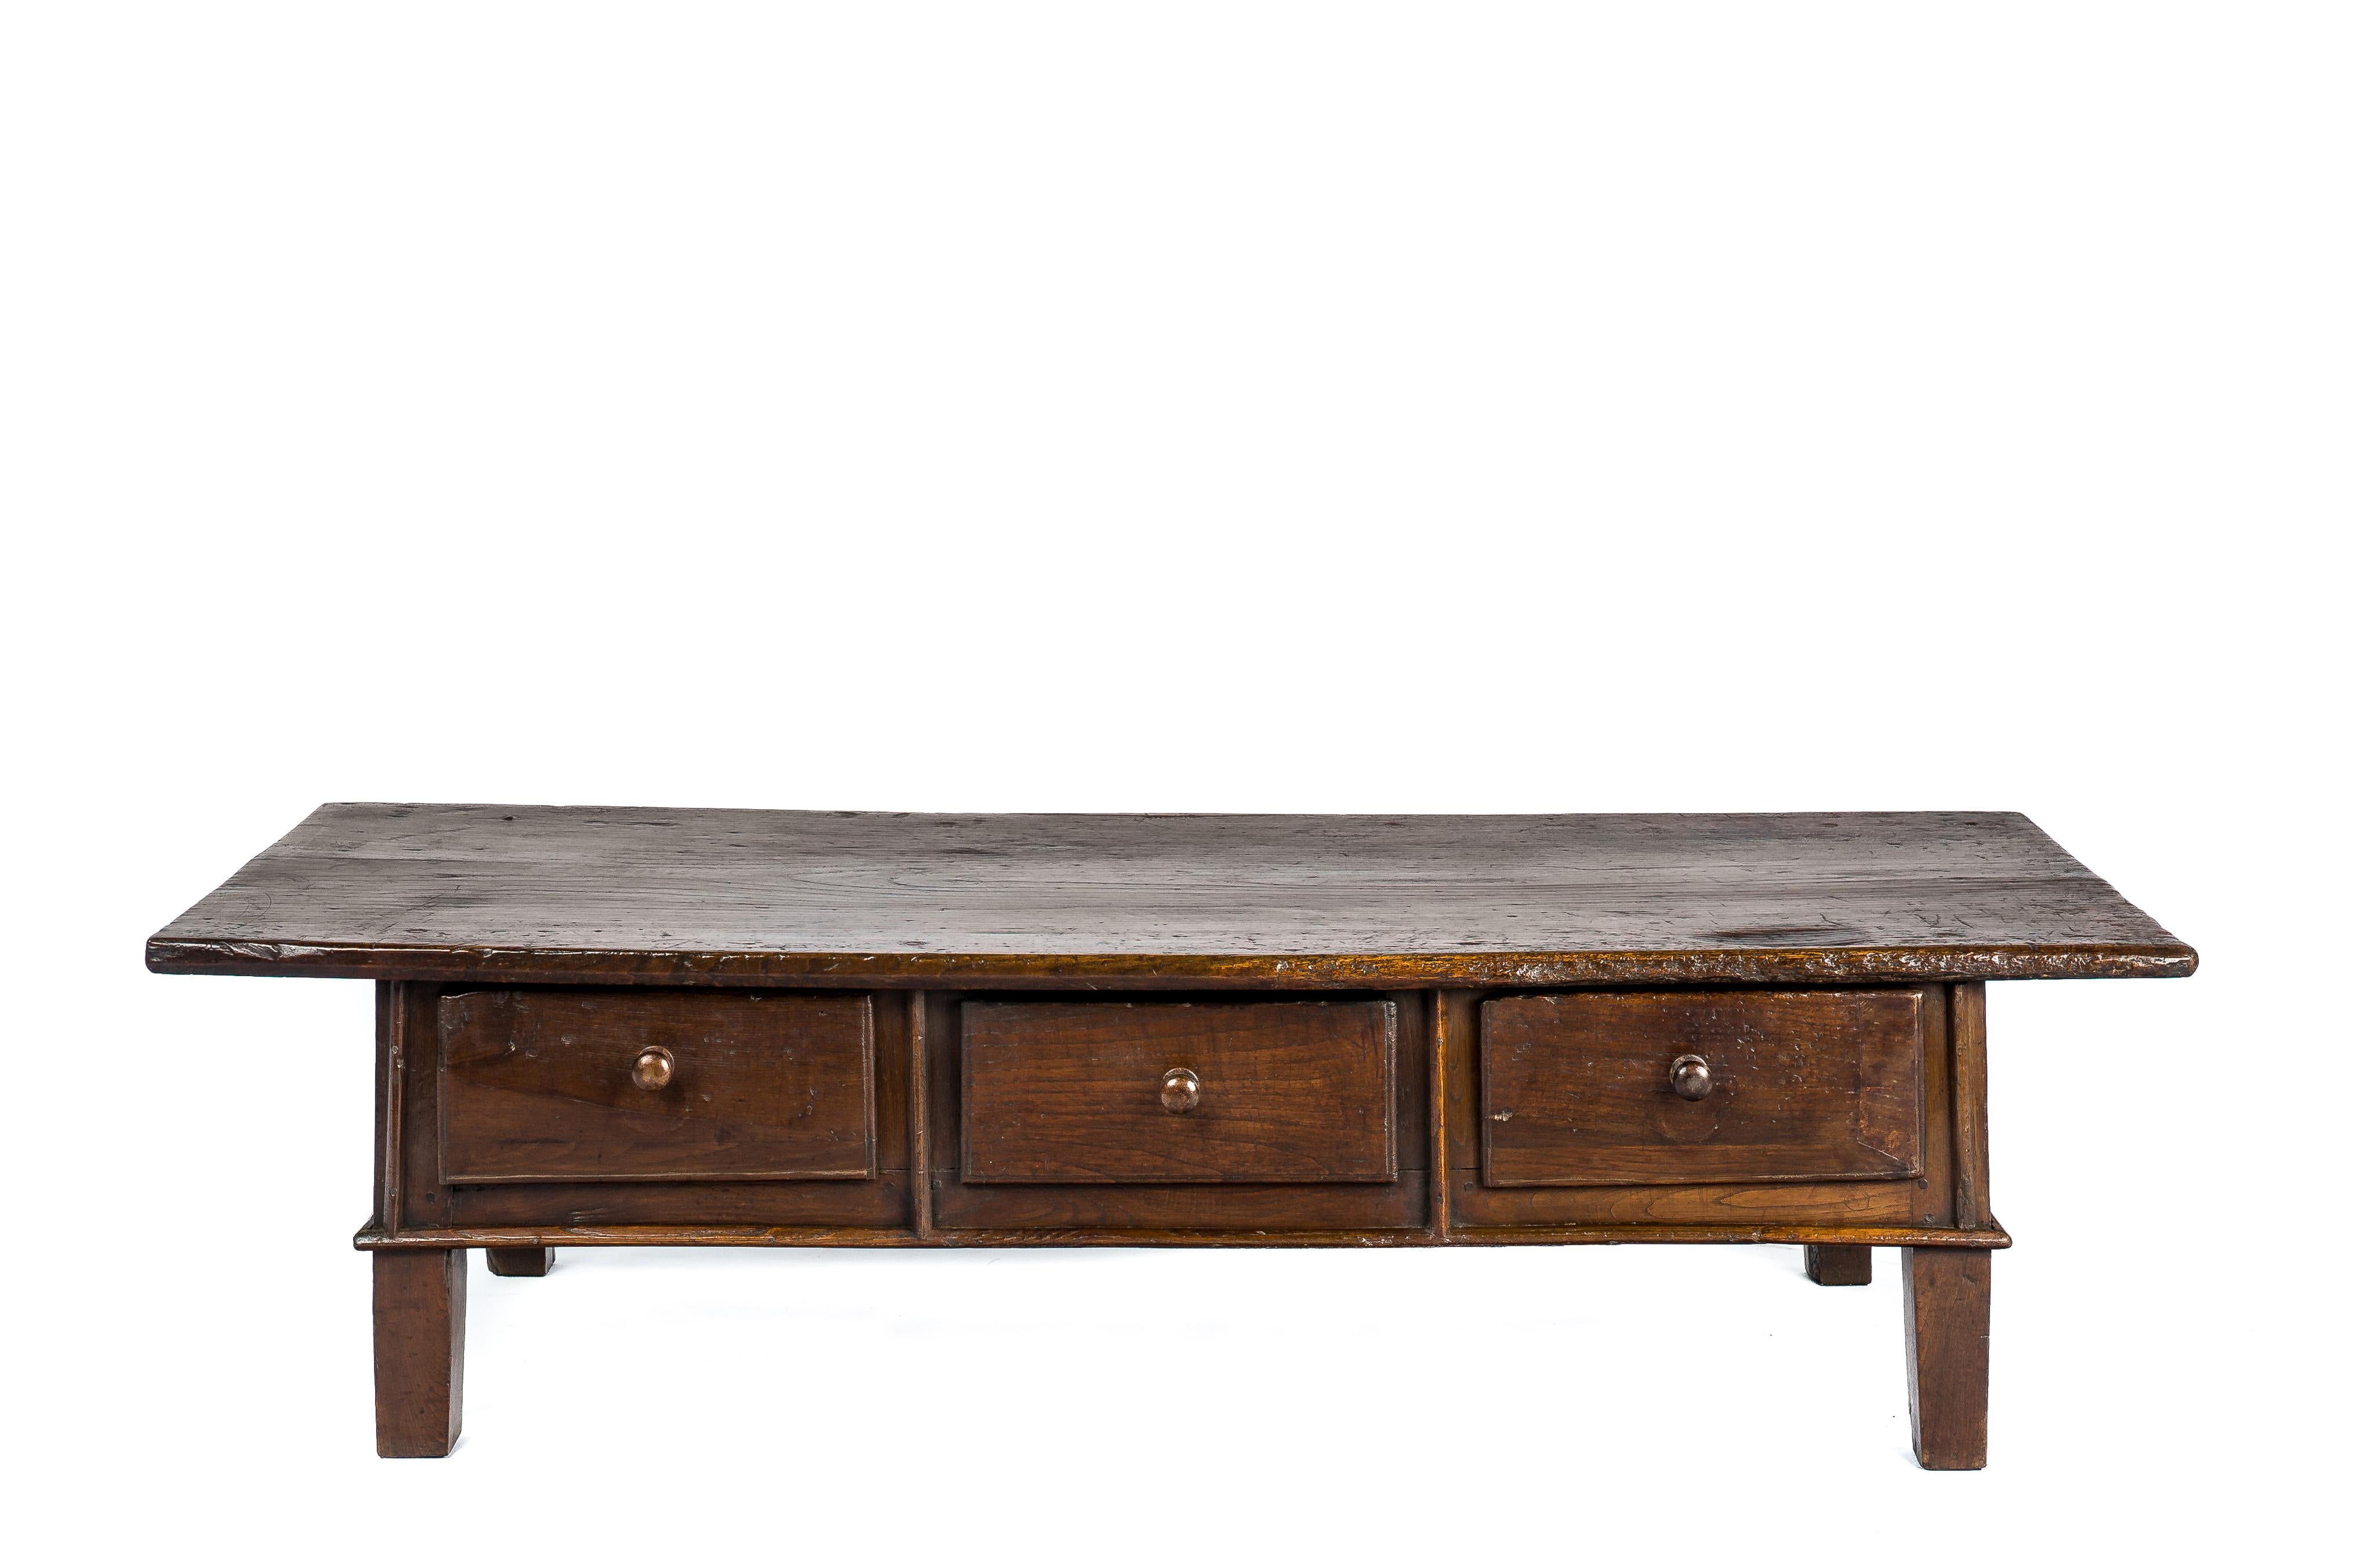 Cette belle table basse ou table basse rustique de couleur brun chaud est originaire d'Espagne et date d'environ 1775. La table est dotée d'un fantastique plateau réalisé à partir d'une seule planche de bois de châtaignier massif de 1,4 pouce